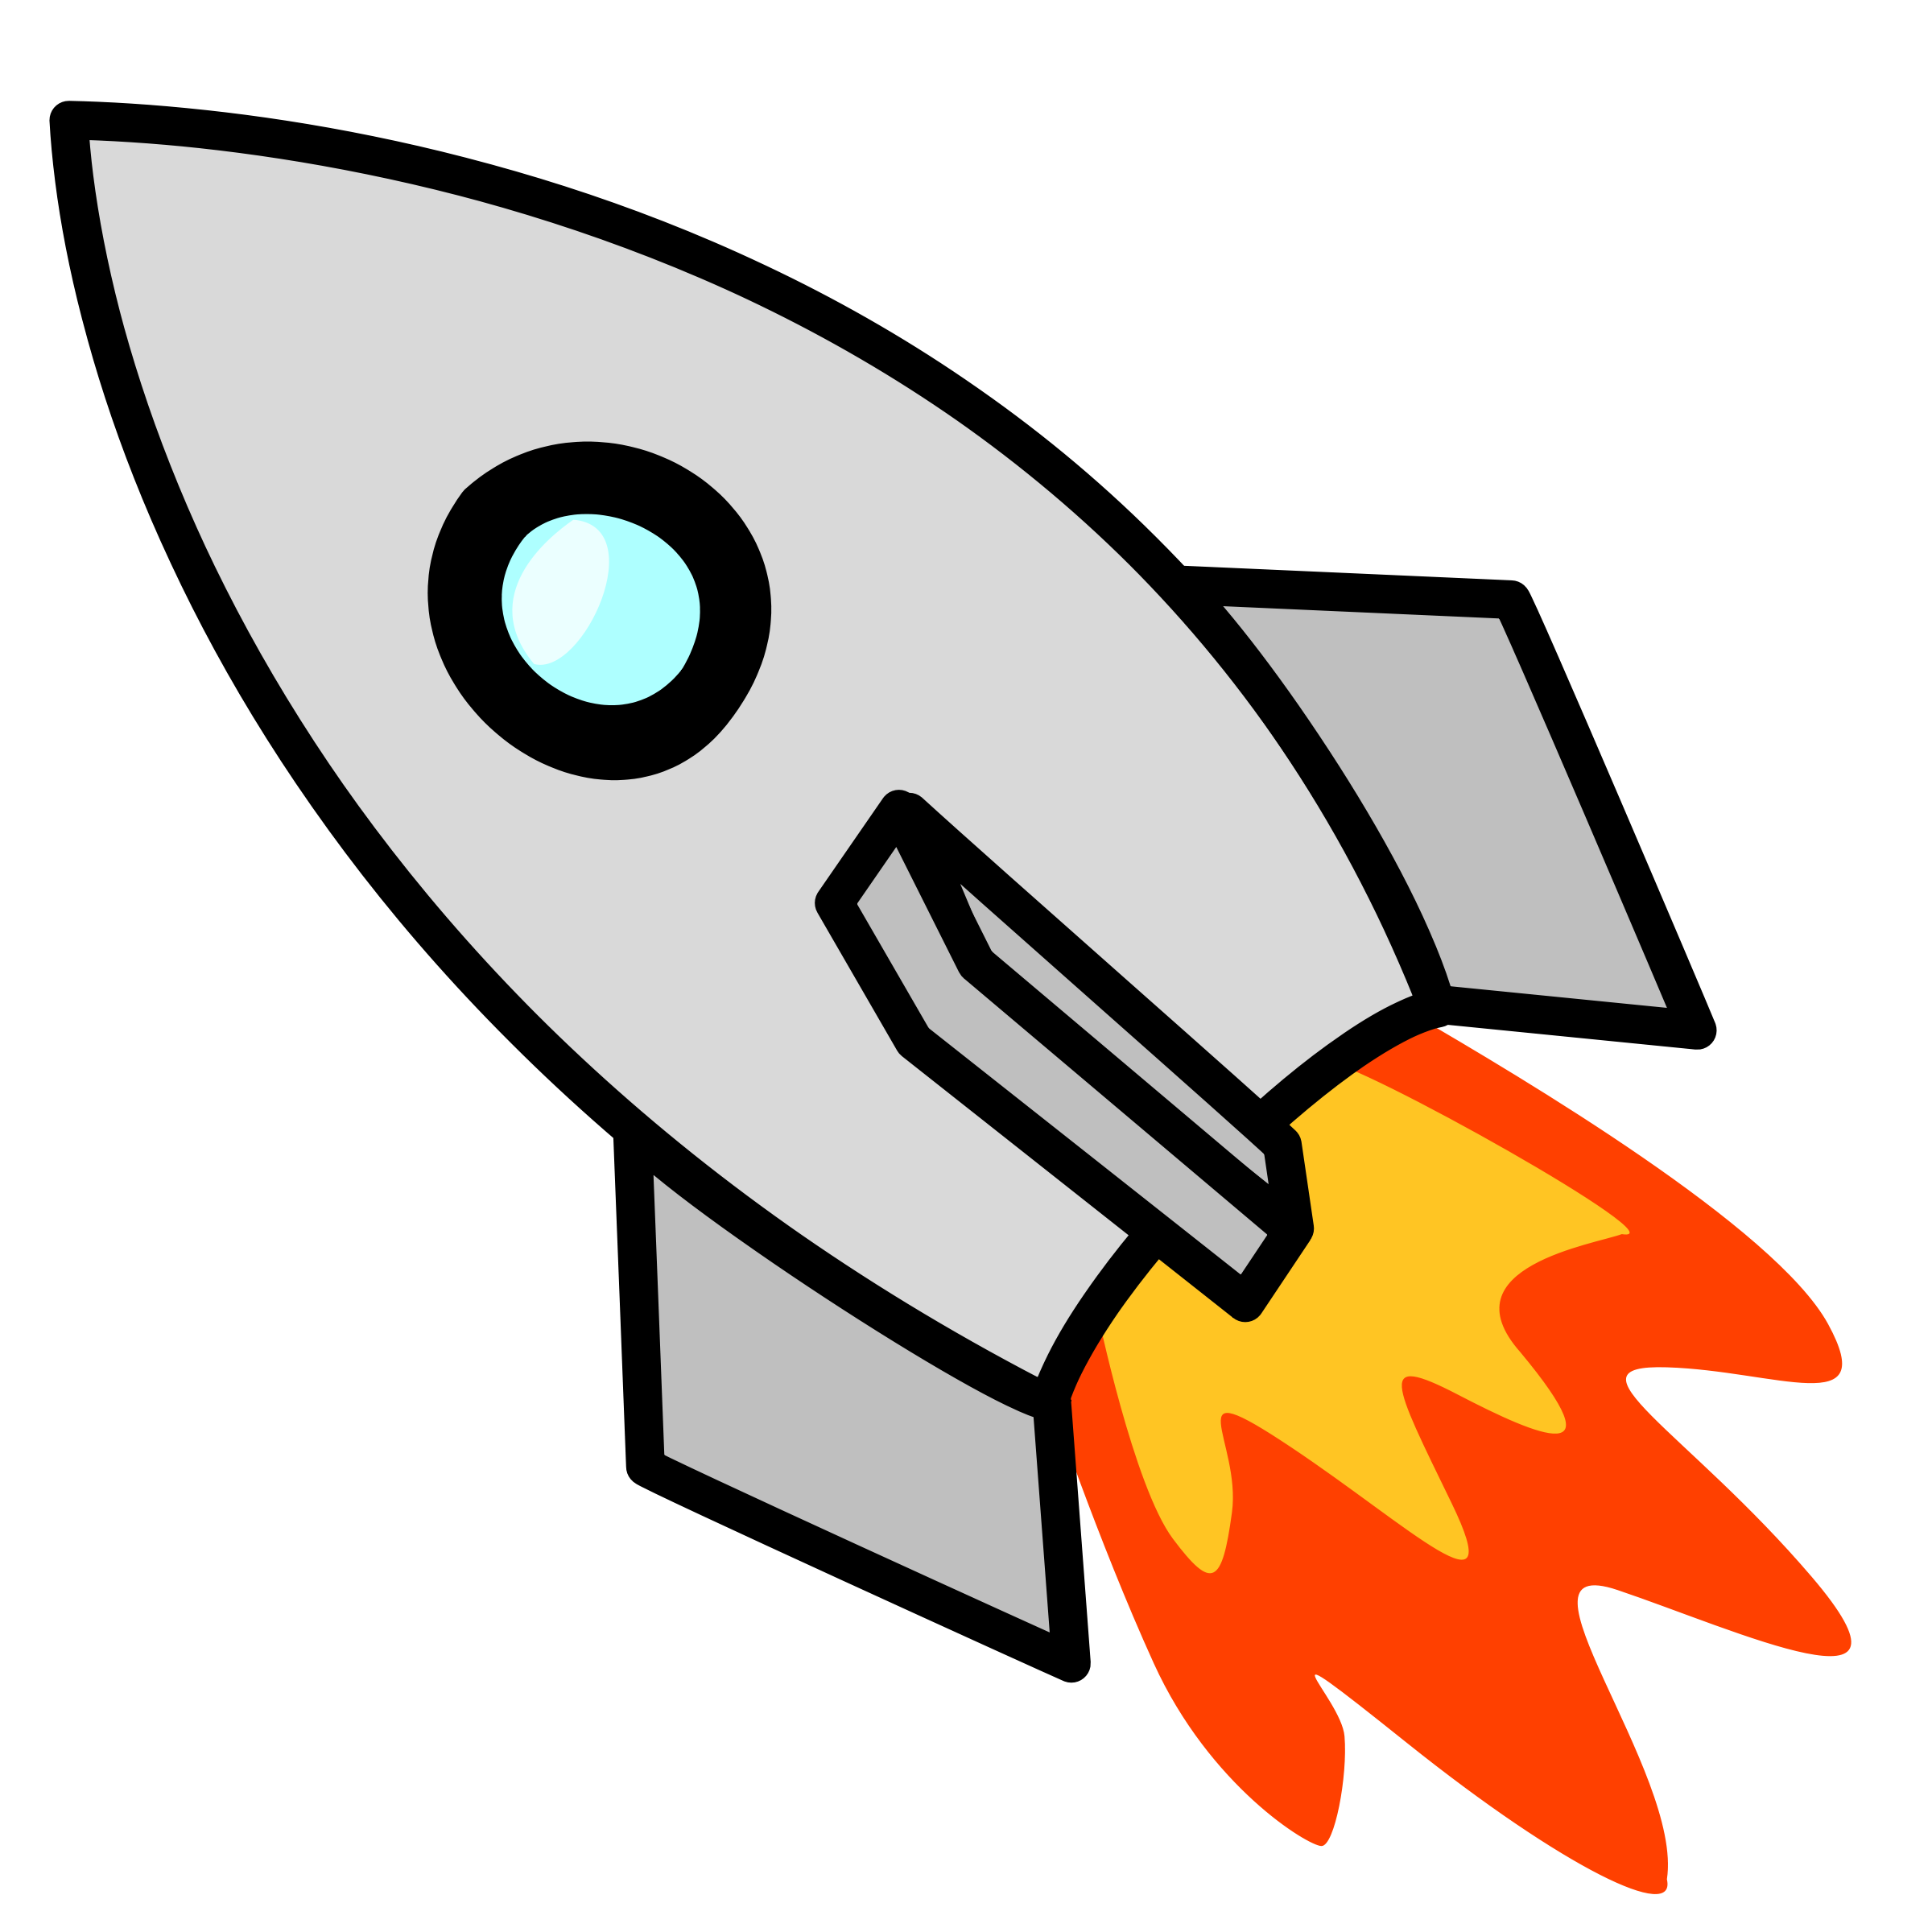 Rocket Ship Clip Art - Cliparts.co